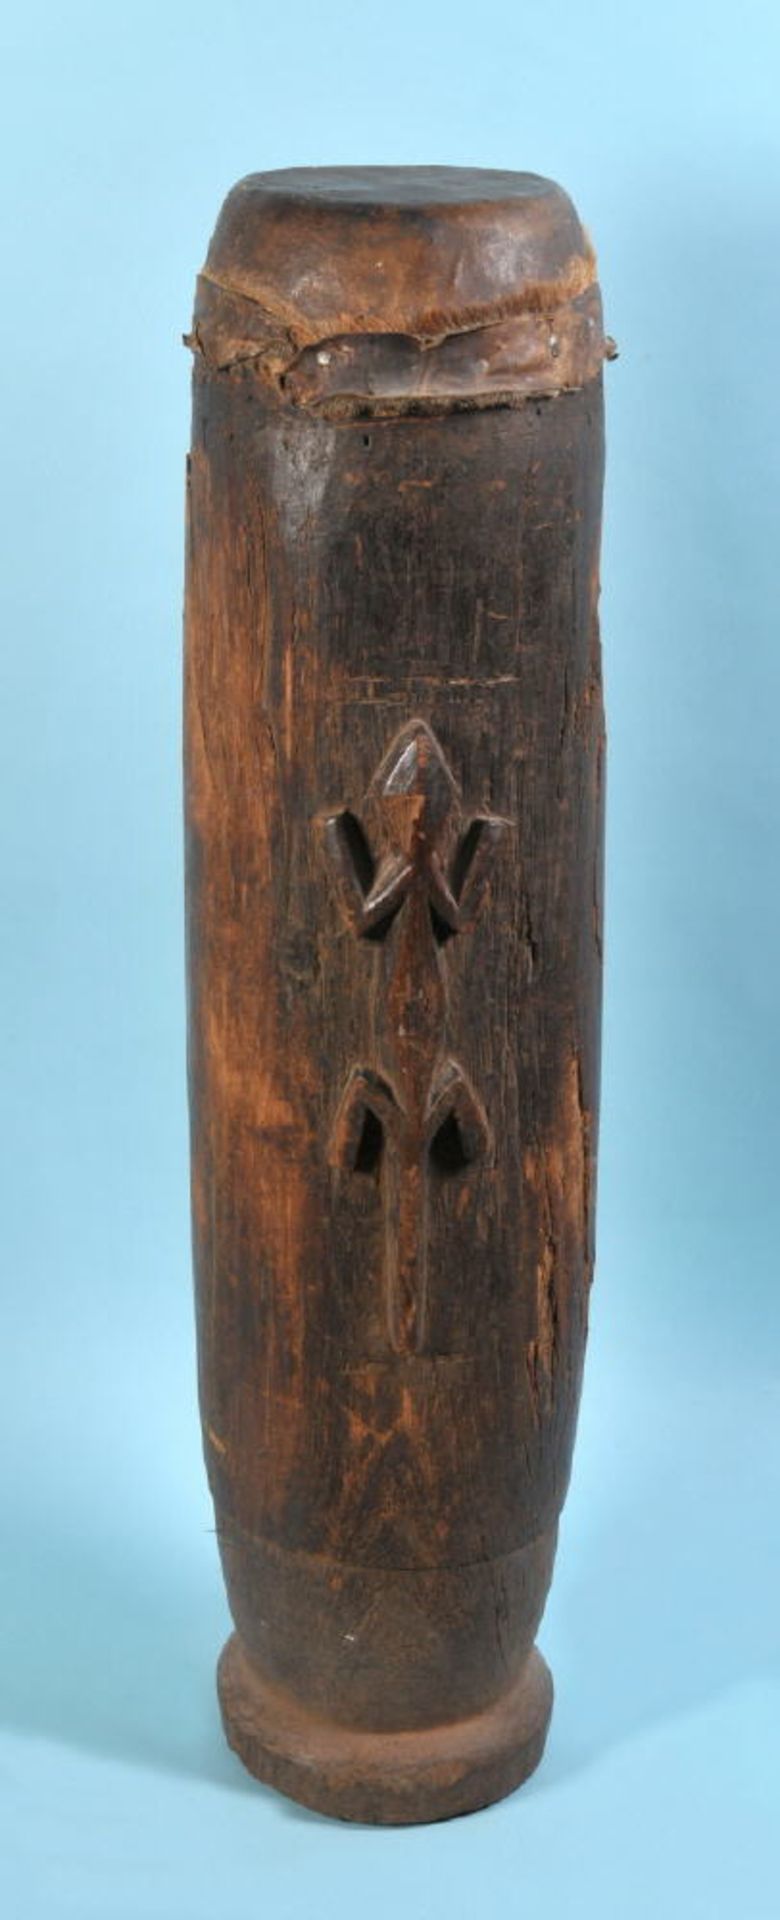 Afrikanisches Instrument - Buschtrommel Holz, braun gebeizt, geschnitztes Echsendekor, Ledermembran,